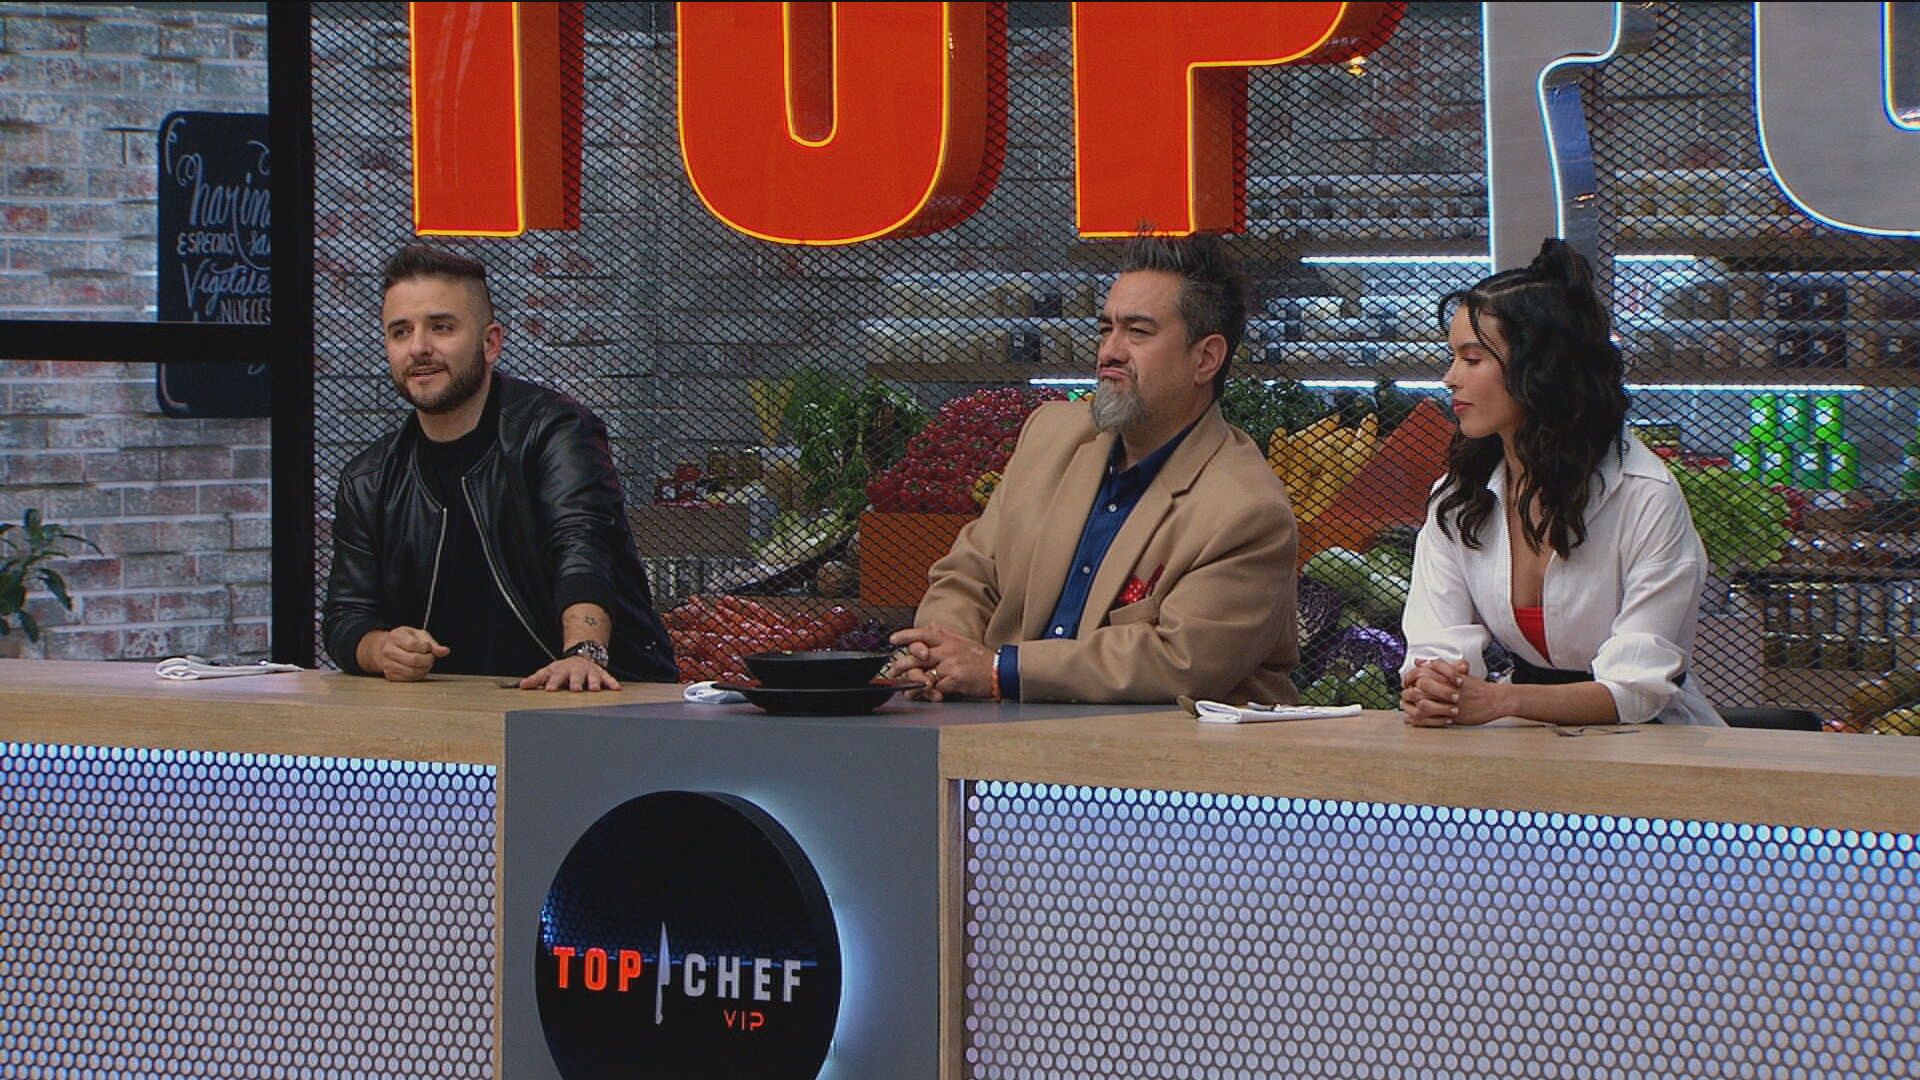 Watch Top Chef VIP Episode Uno menos